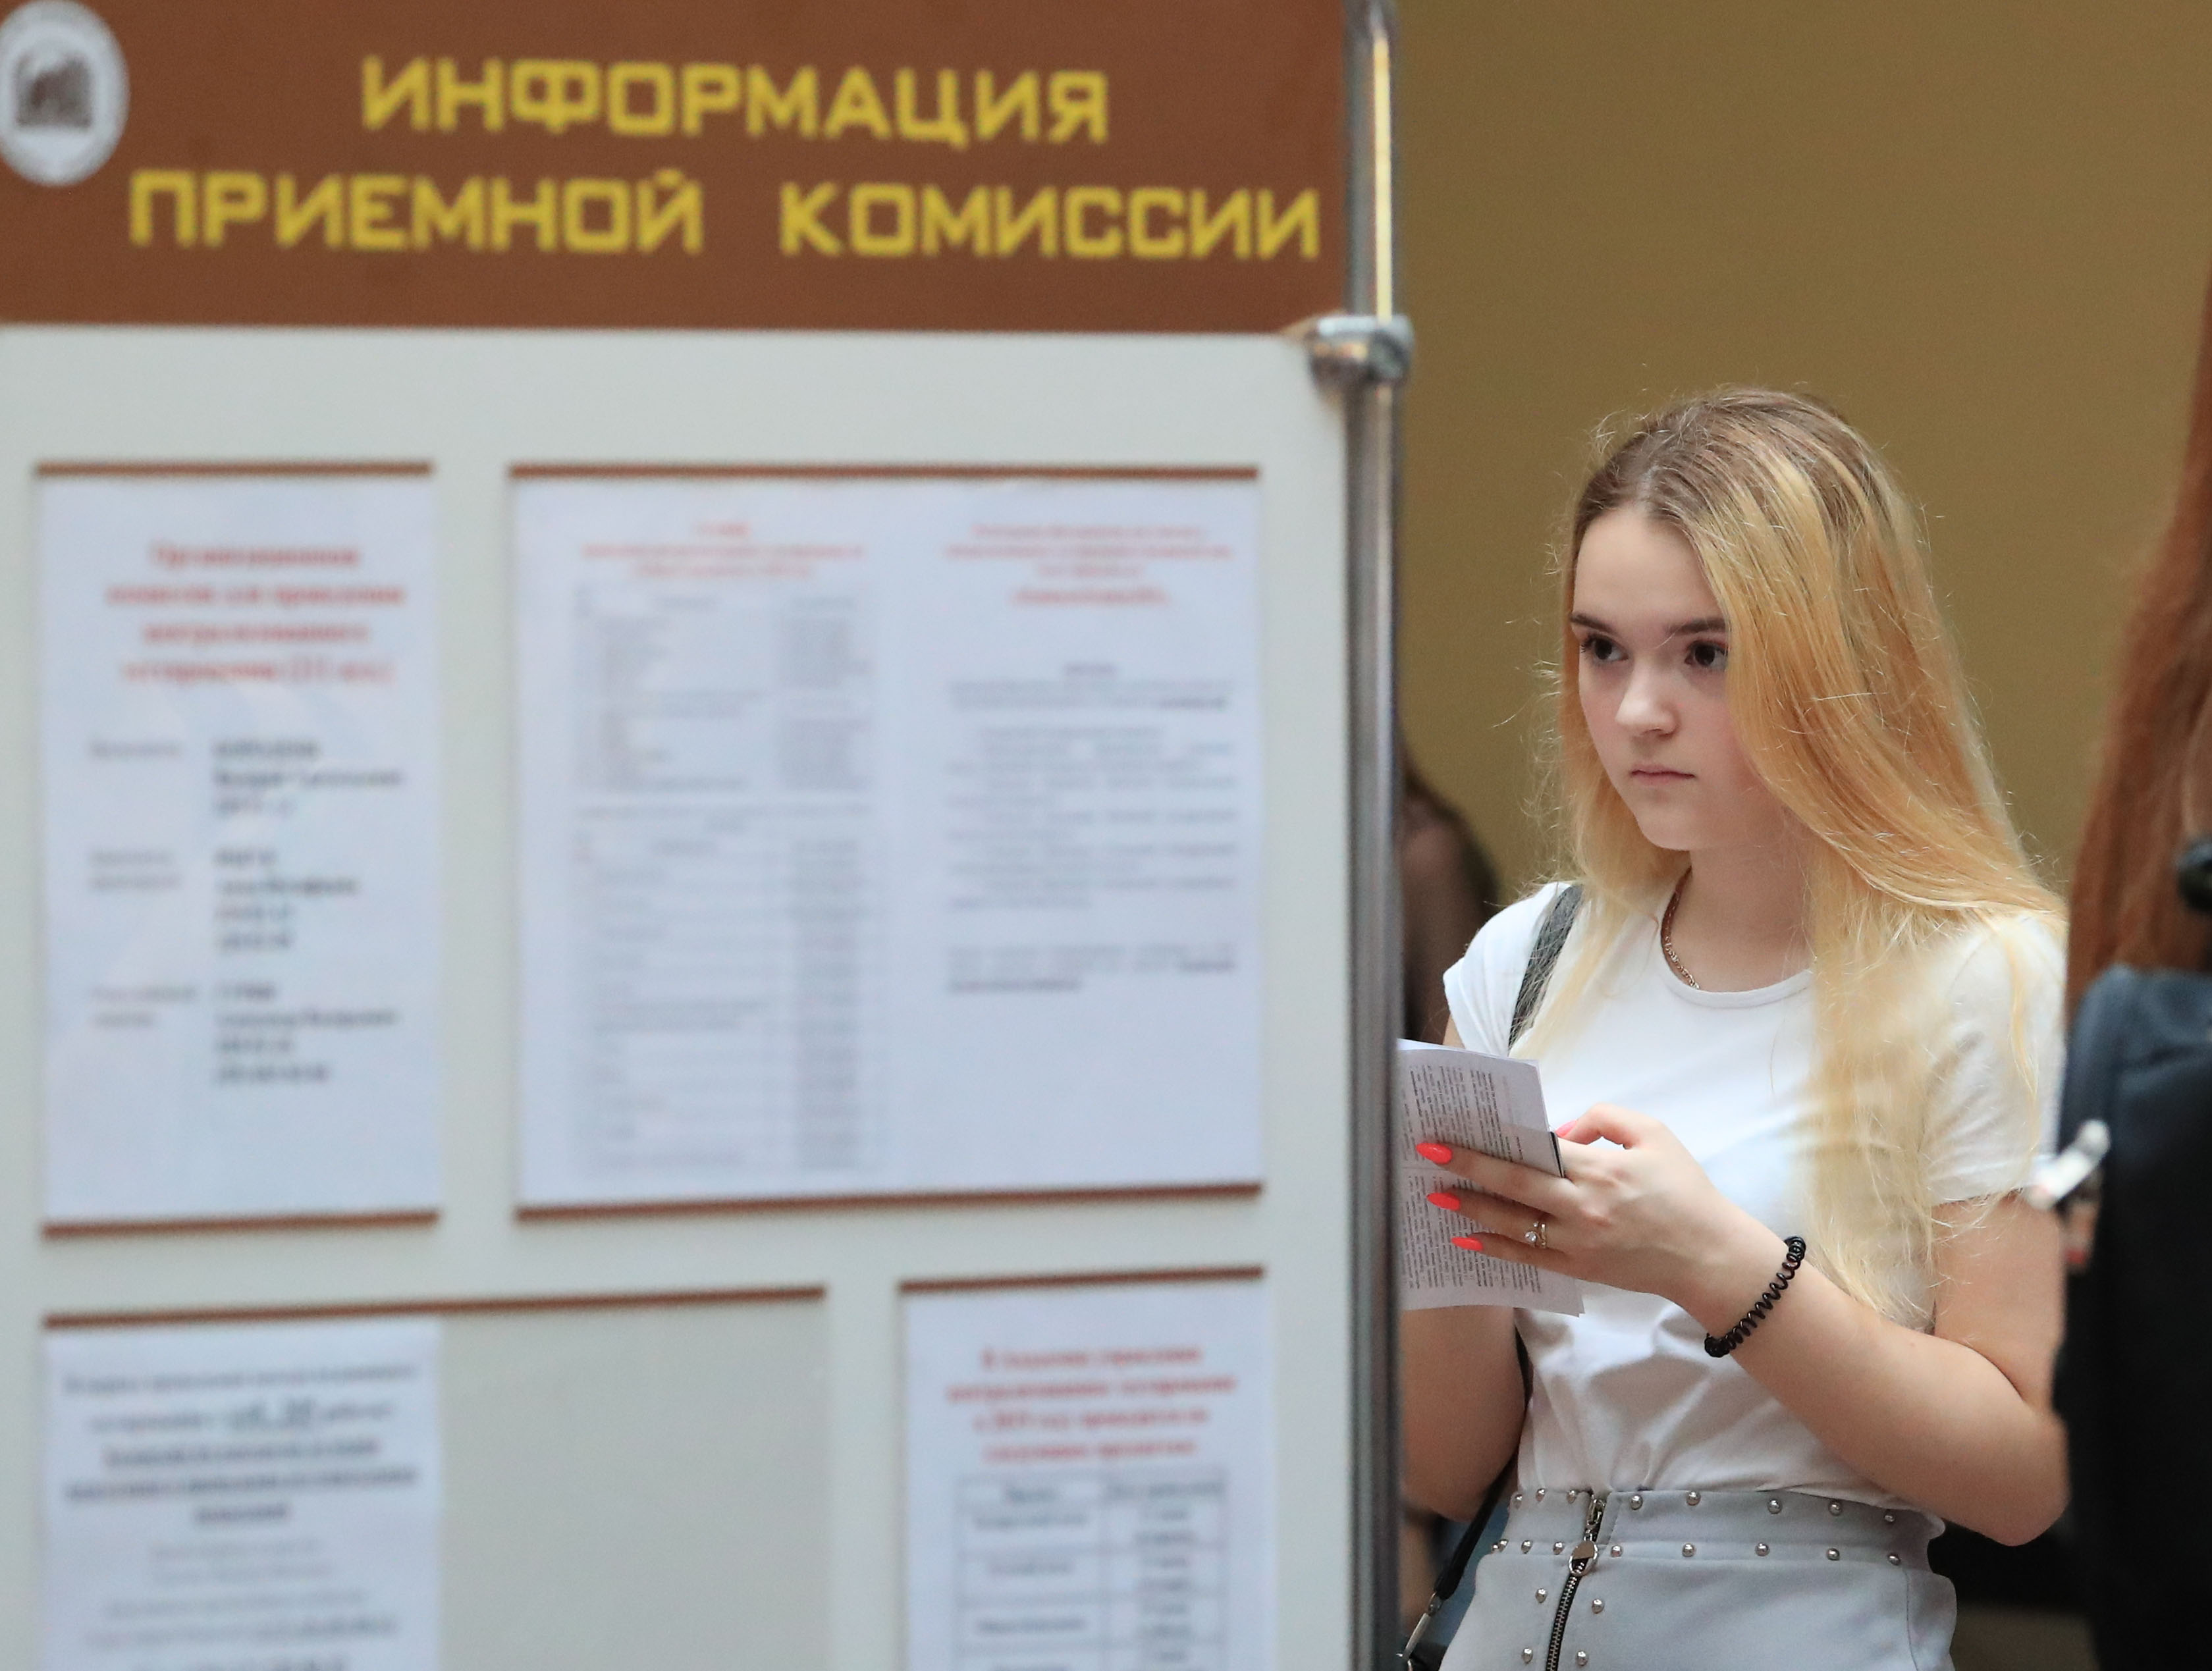  Министерство науки и высшего образования РФ сделало проще процедуру поступления в высшие учебные заведения для белорусских абитуриентов